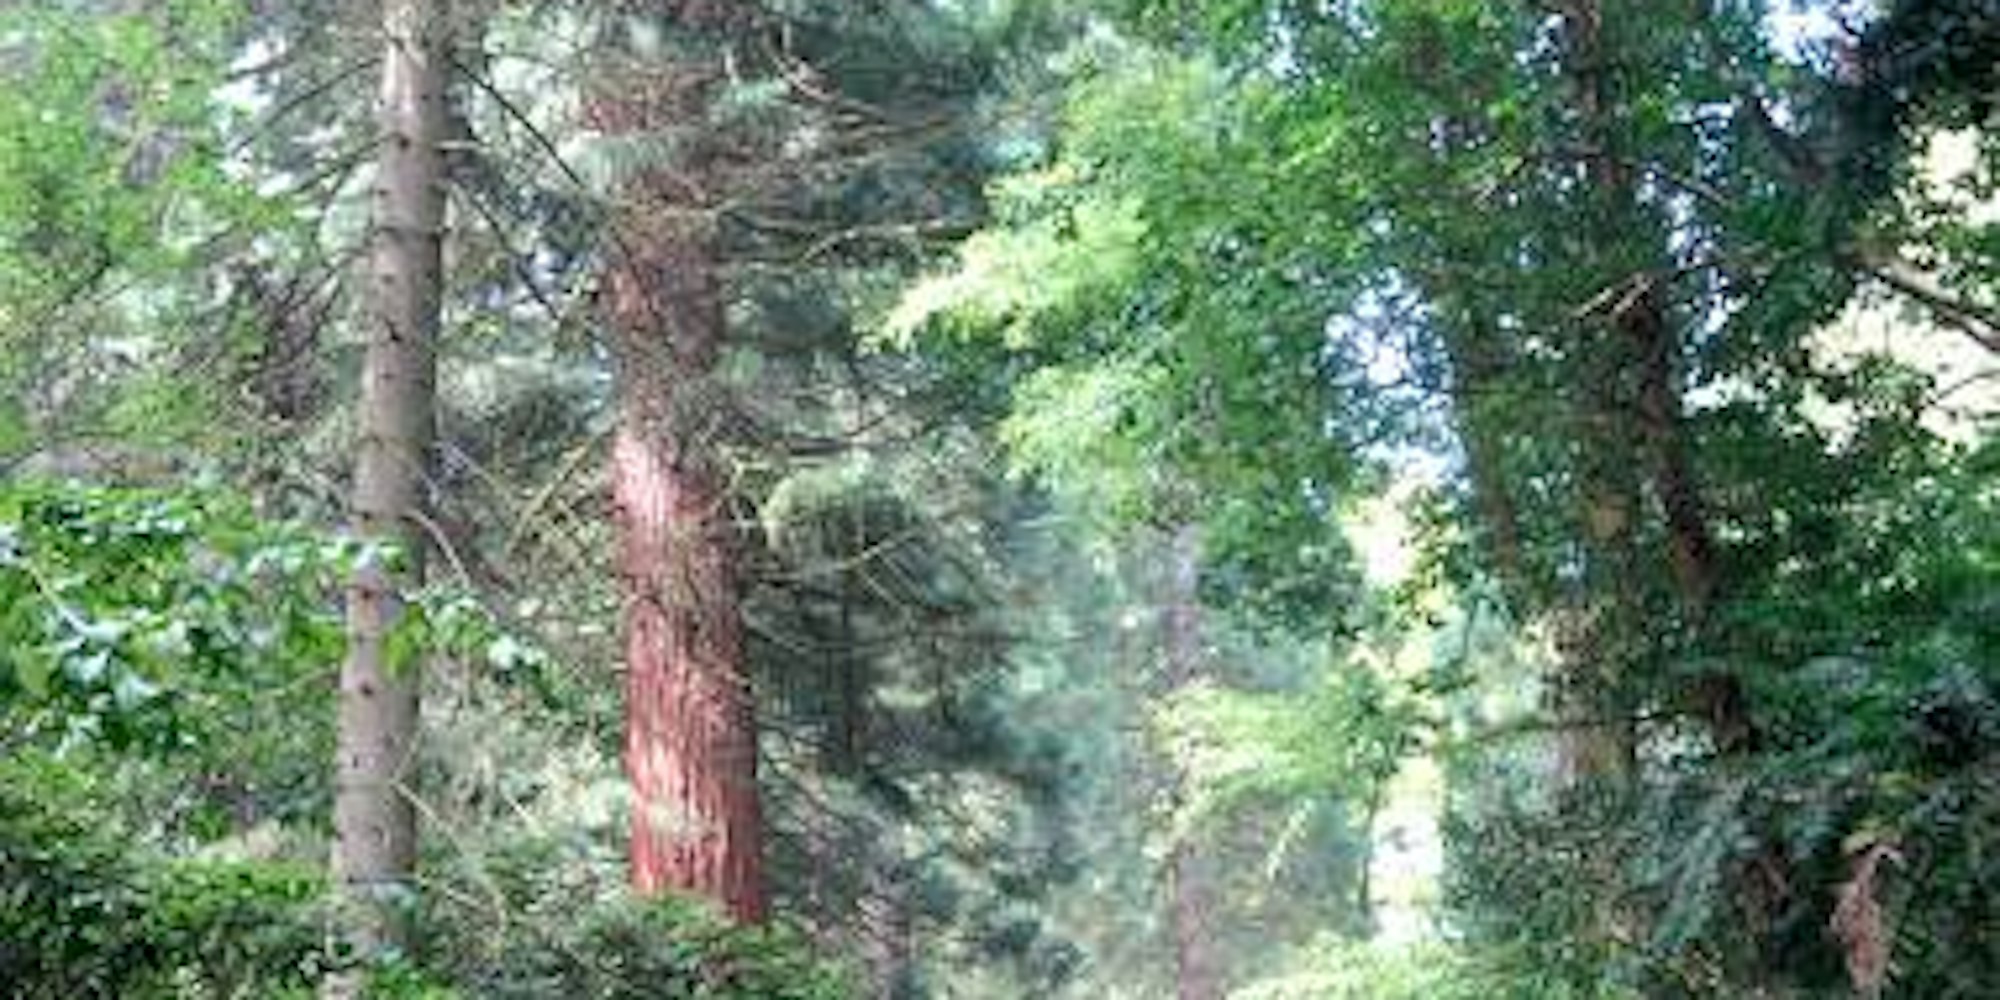 Geheimtipp Arboretum: Eine wunderbare grüne Welt offenbart sich den Besuchern. (alle Bilder: Gauger)